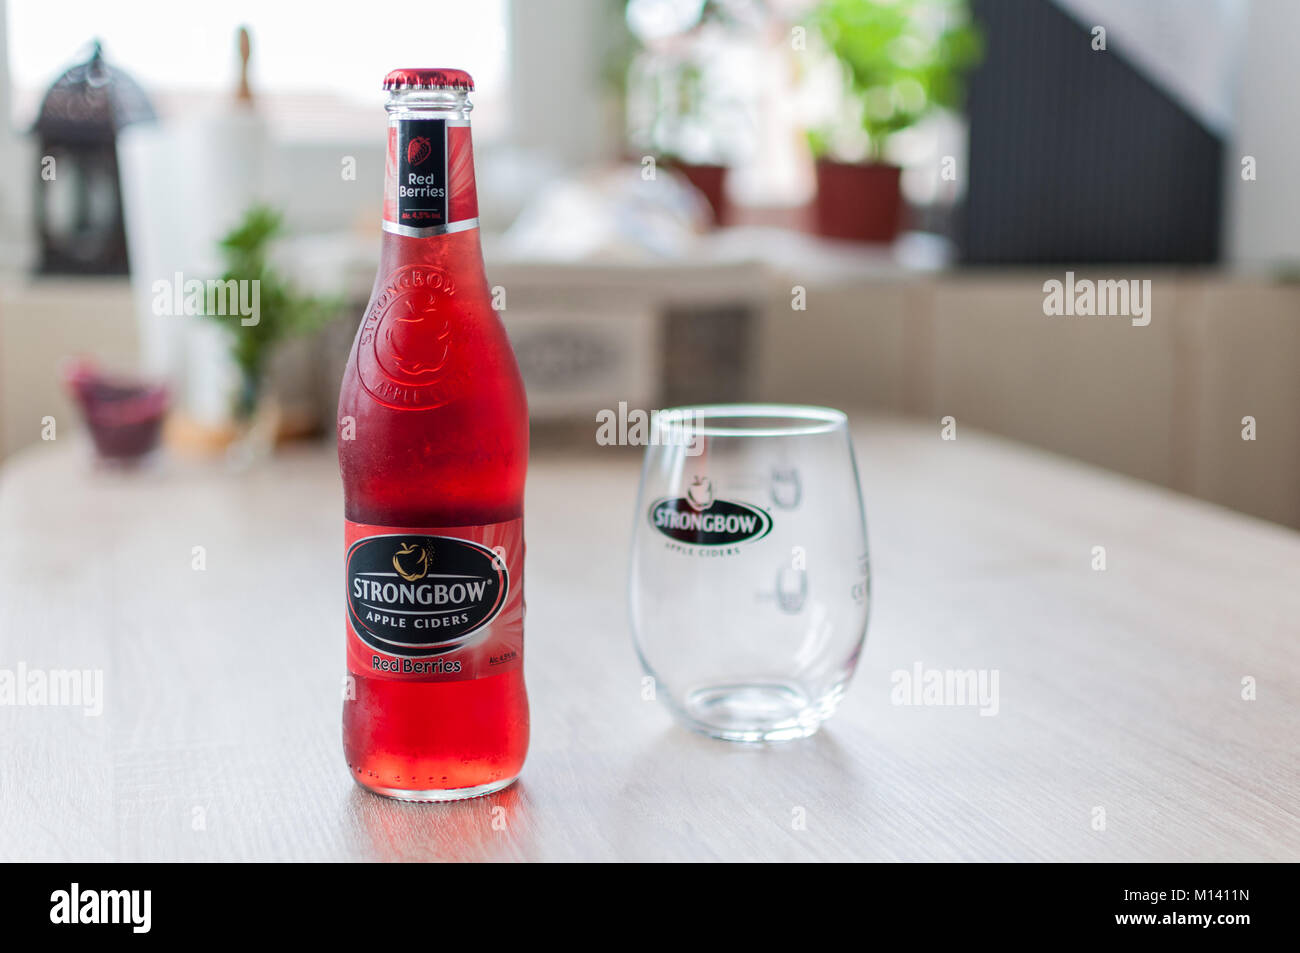 TIMISOARA, Rumänien - Januar 04, 2018: Strongbow Flasche und Glas auf einen  hölzernen Tisch. Apple Cider. Rote Beeren Stockfotografie - Alamy